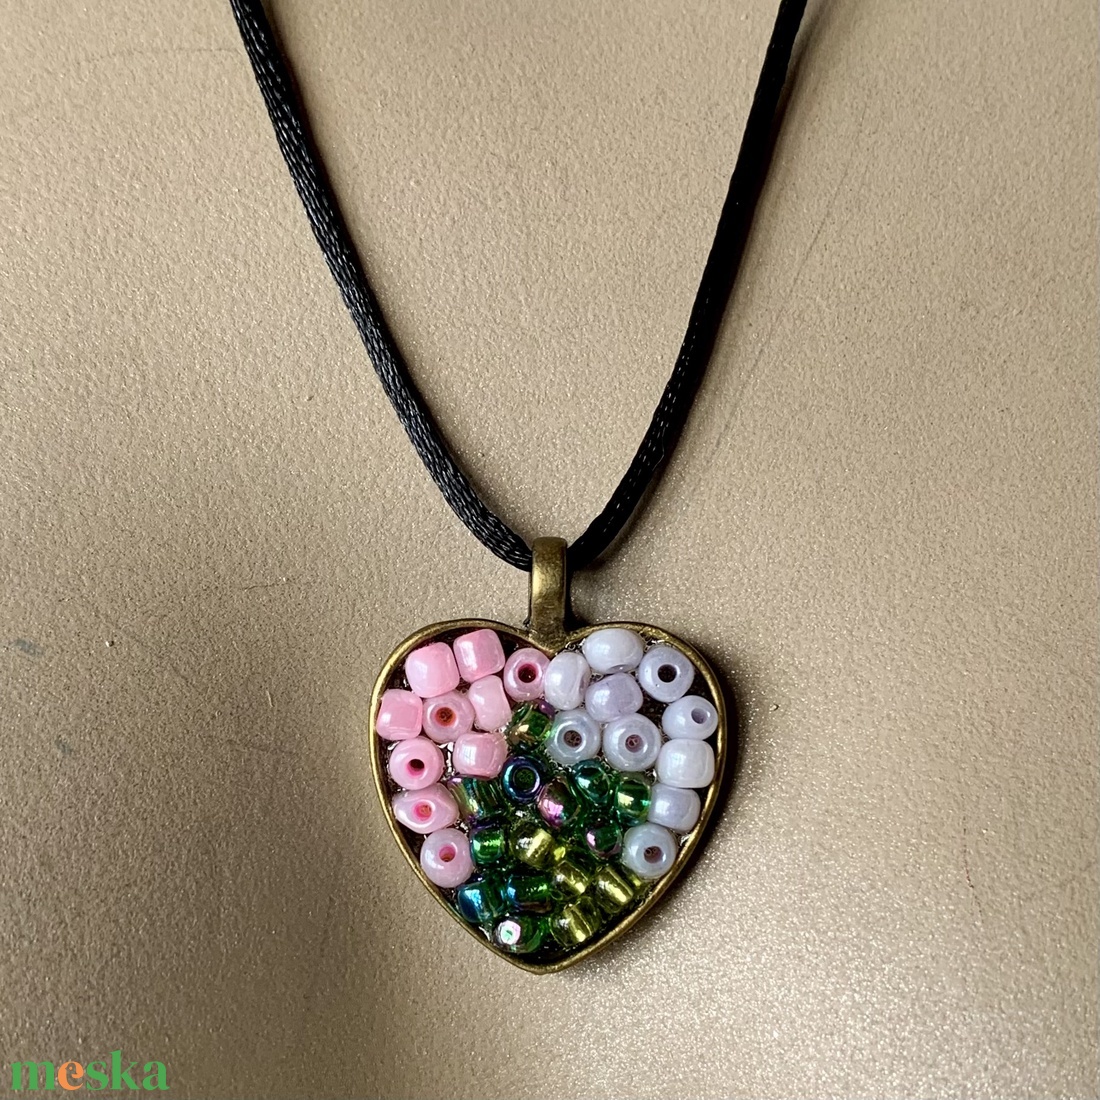 Szív medálos nyaklánc, szív alakú medállal, üveggyöngyökkel, fekete selyemzsinóron - ékszer - nyaklánc - medálos nyaklánc - Meska.hu